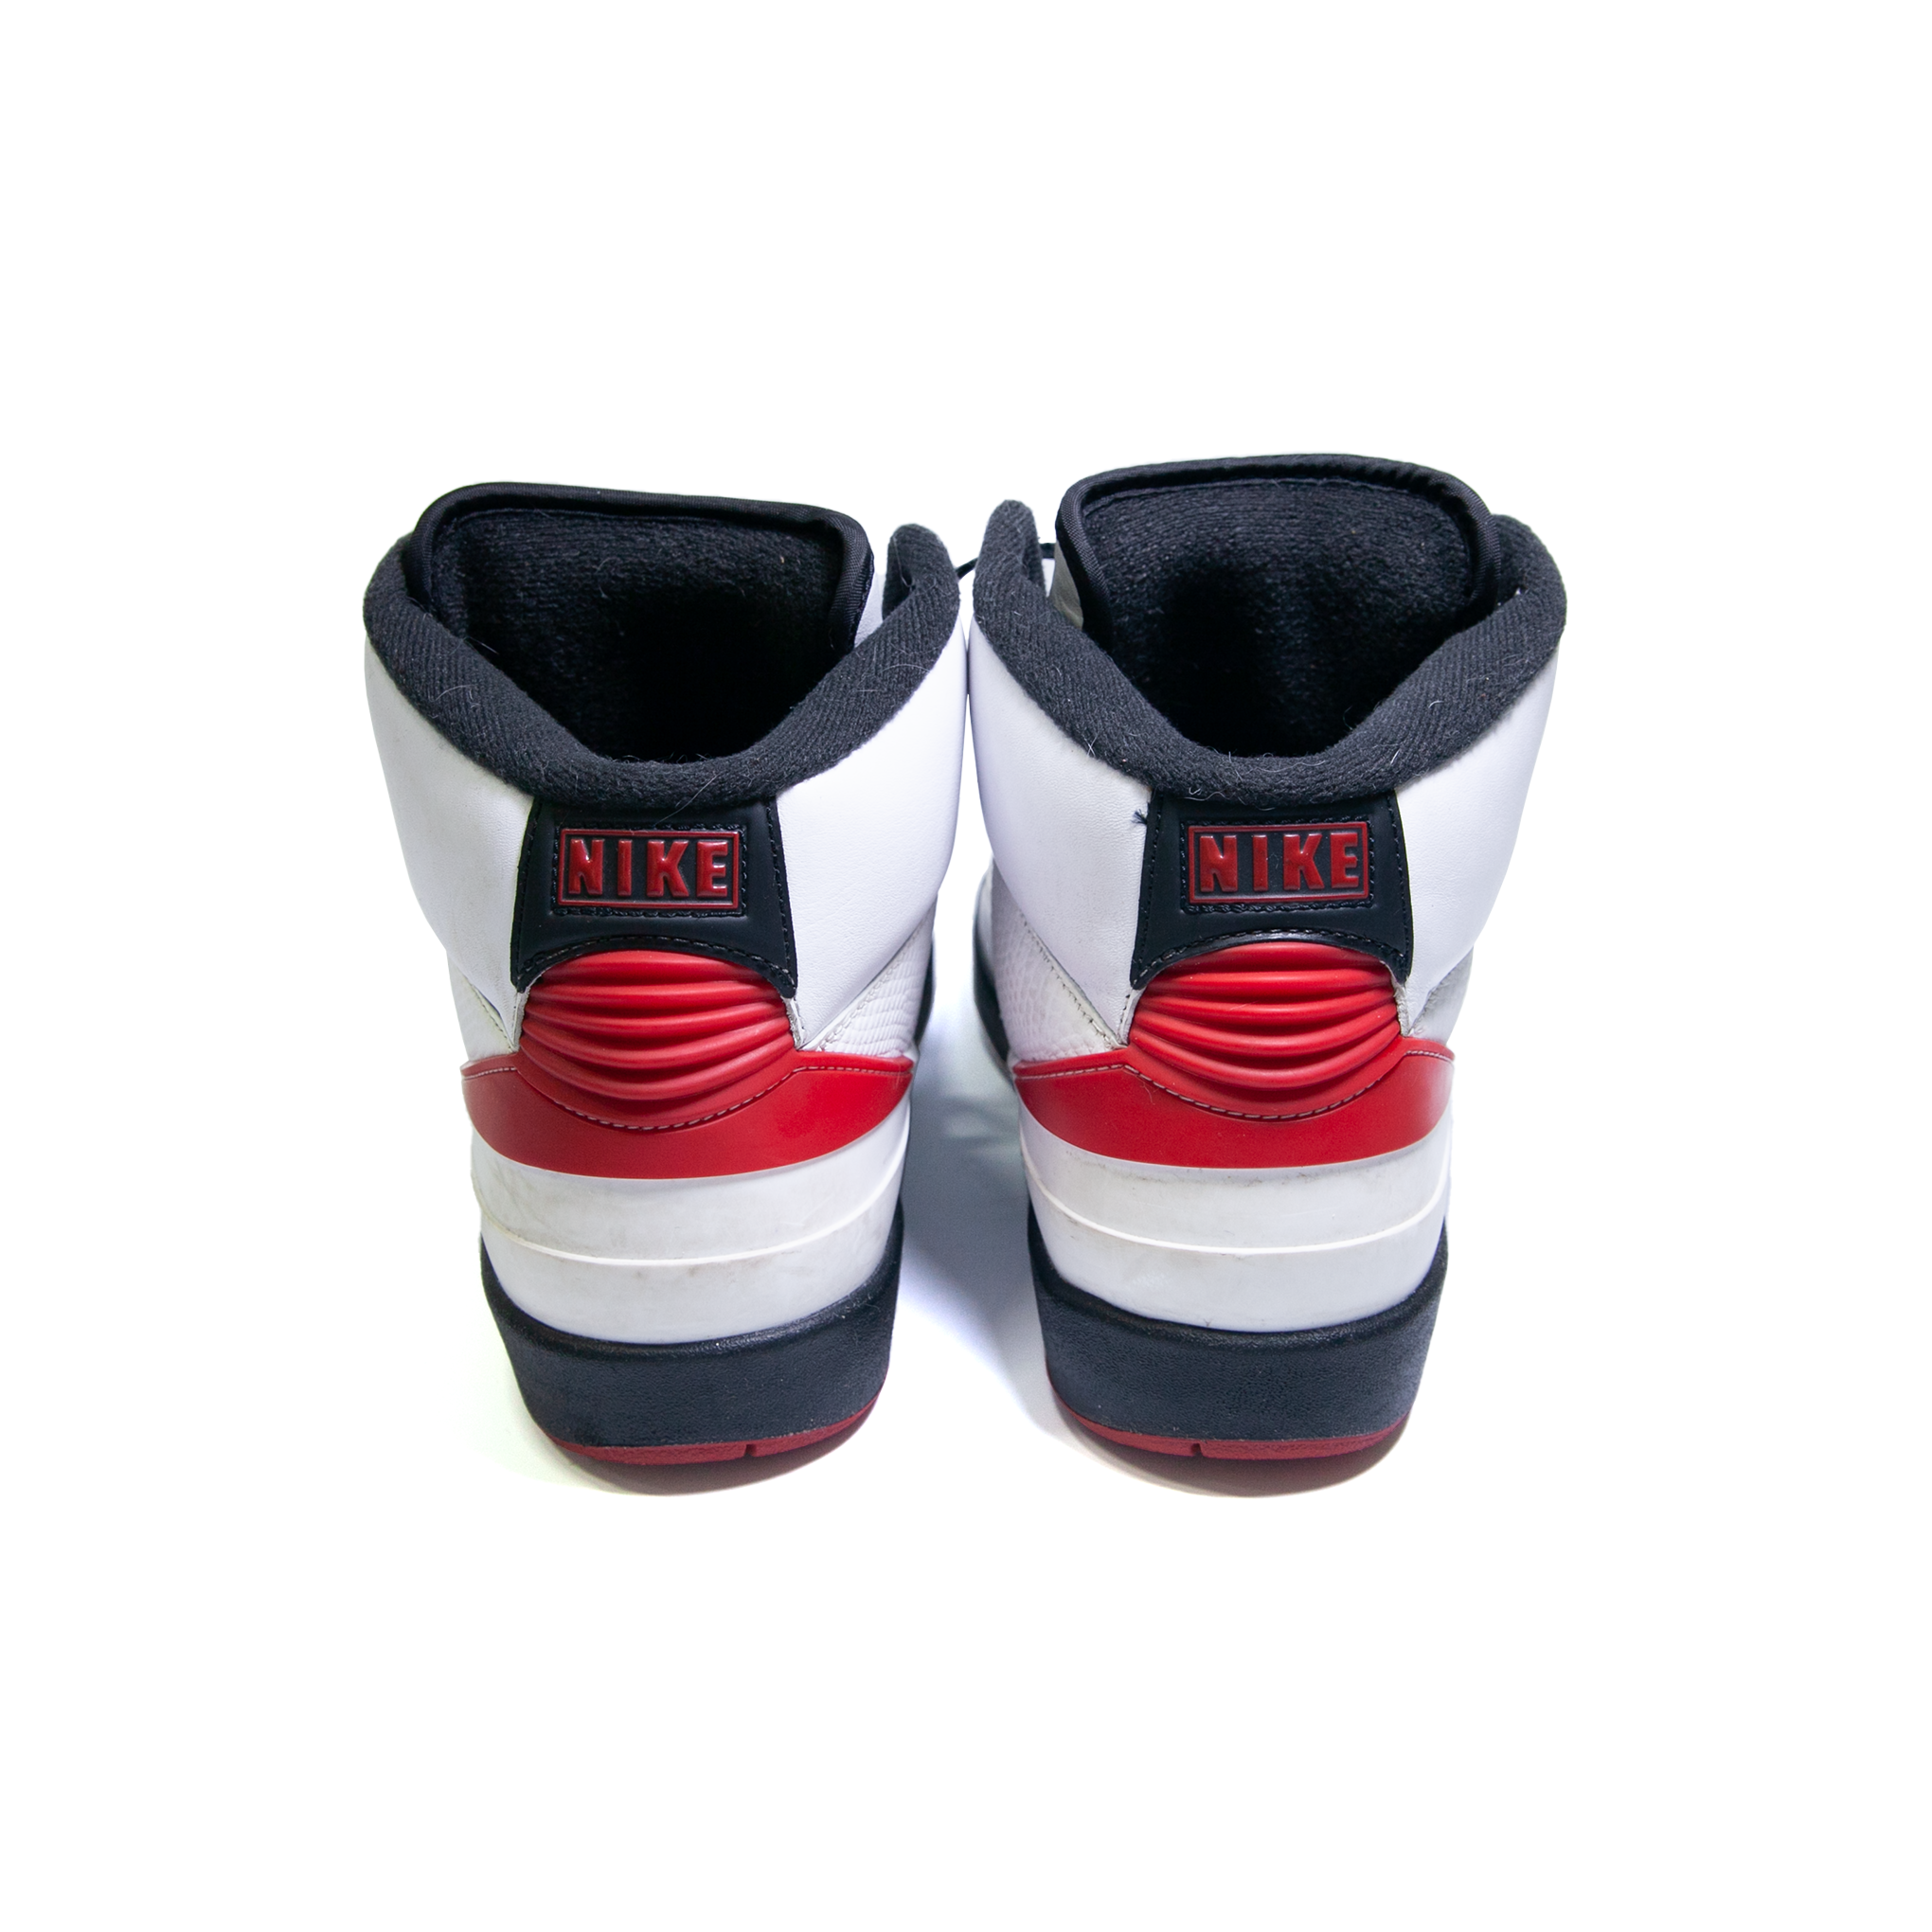 Nike Air Jordan 2 Retro Chicago OG [USED]